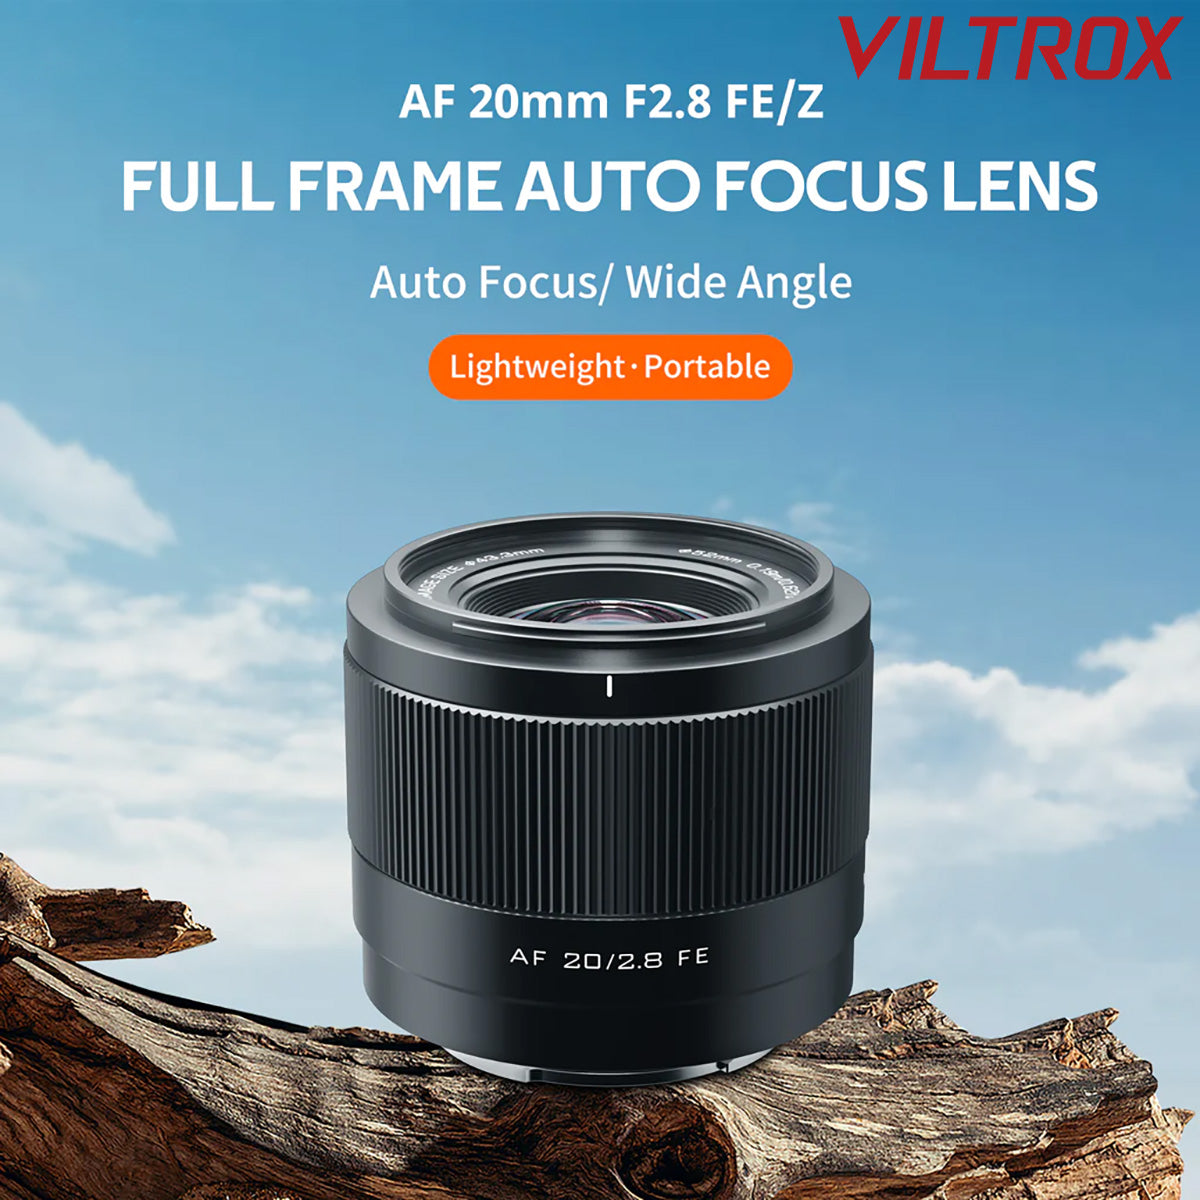 Viltrox 20mm f2.8Z AF Prime Lens for Nikon Z-Mount Full Frame Mirrorless Cameras